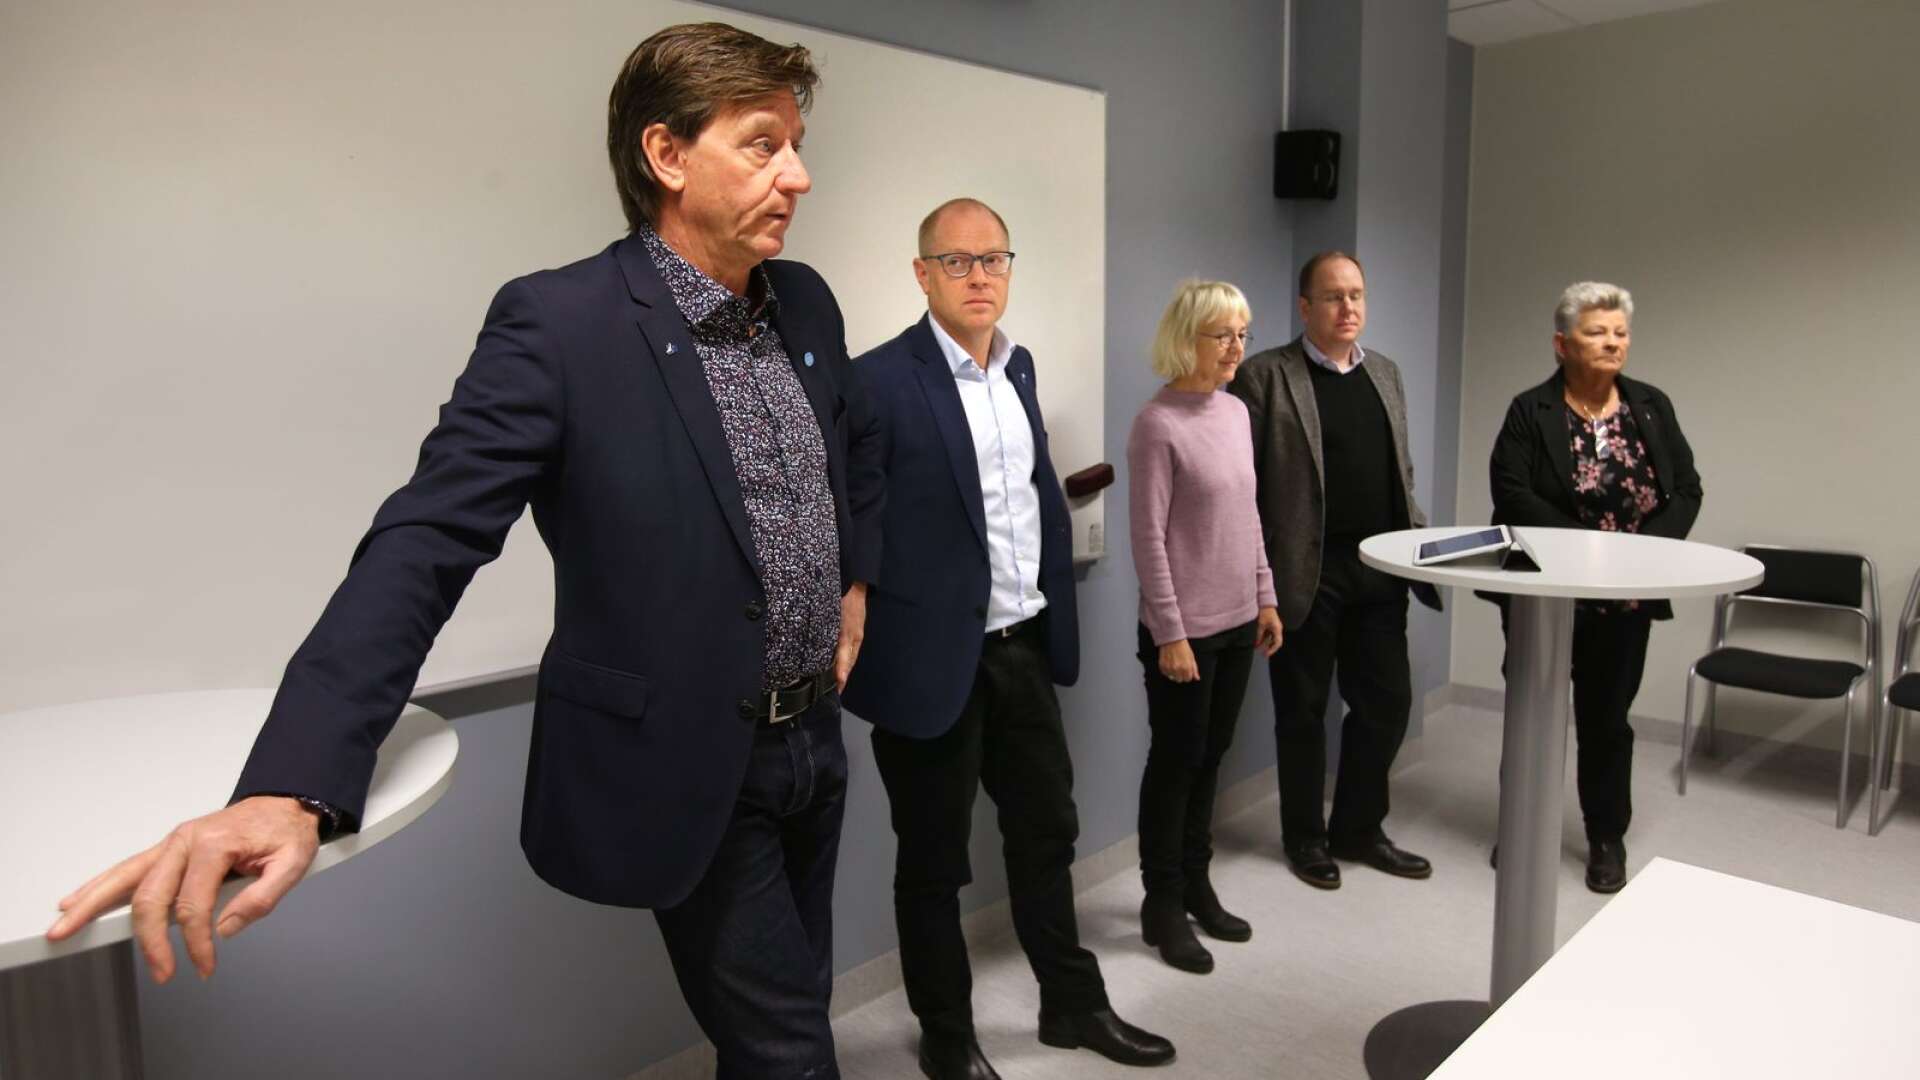 Hammarösamverkan presenterade sig; Bosse Henriksson (M), Mattias Joelsson (KD), Britt Bagge (MP), Peter Johansson (L) och Margareta Ivarsson (C). 